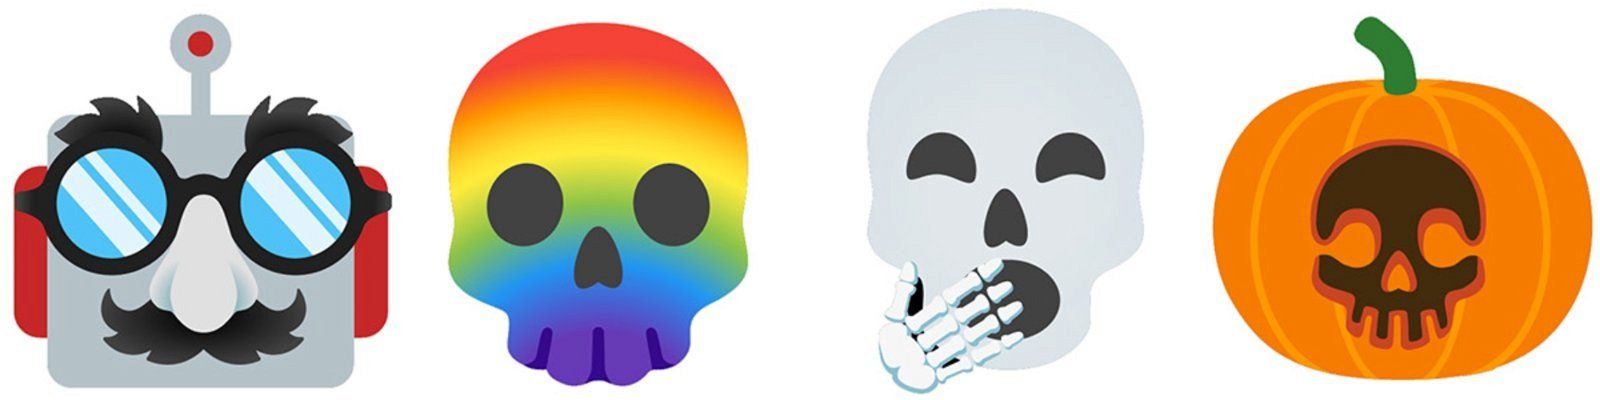 emojis combinados para obtener diferentes caras 4